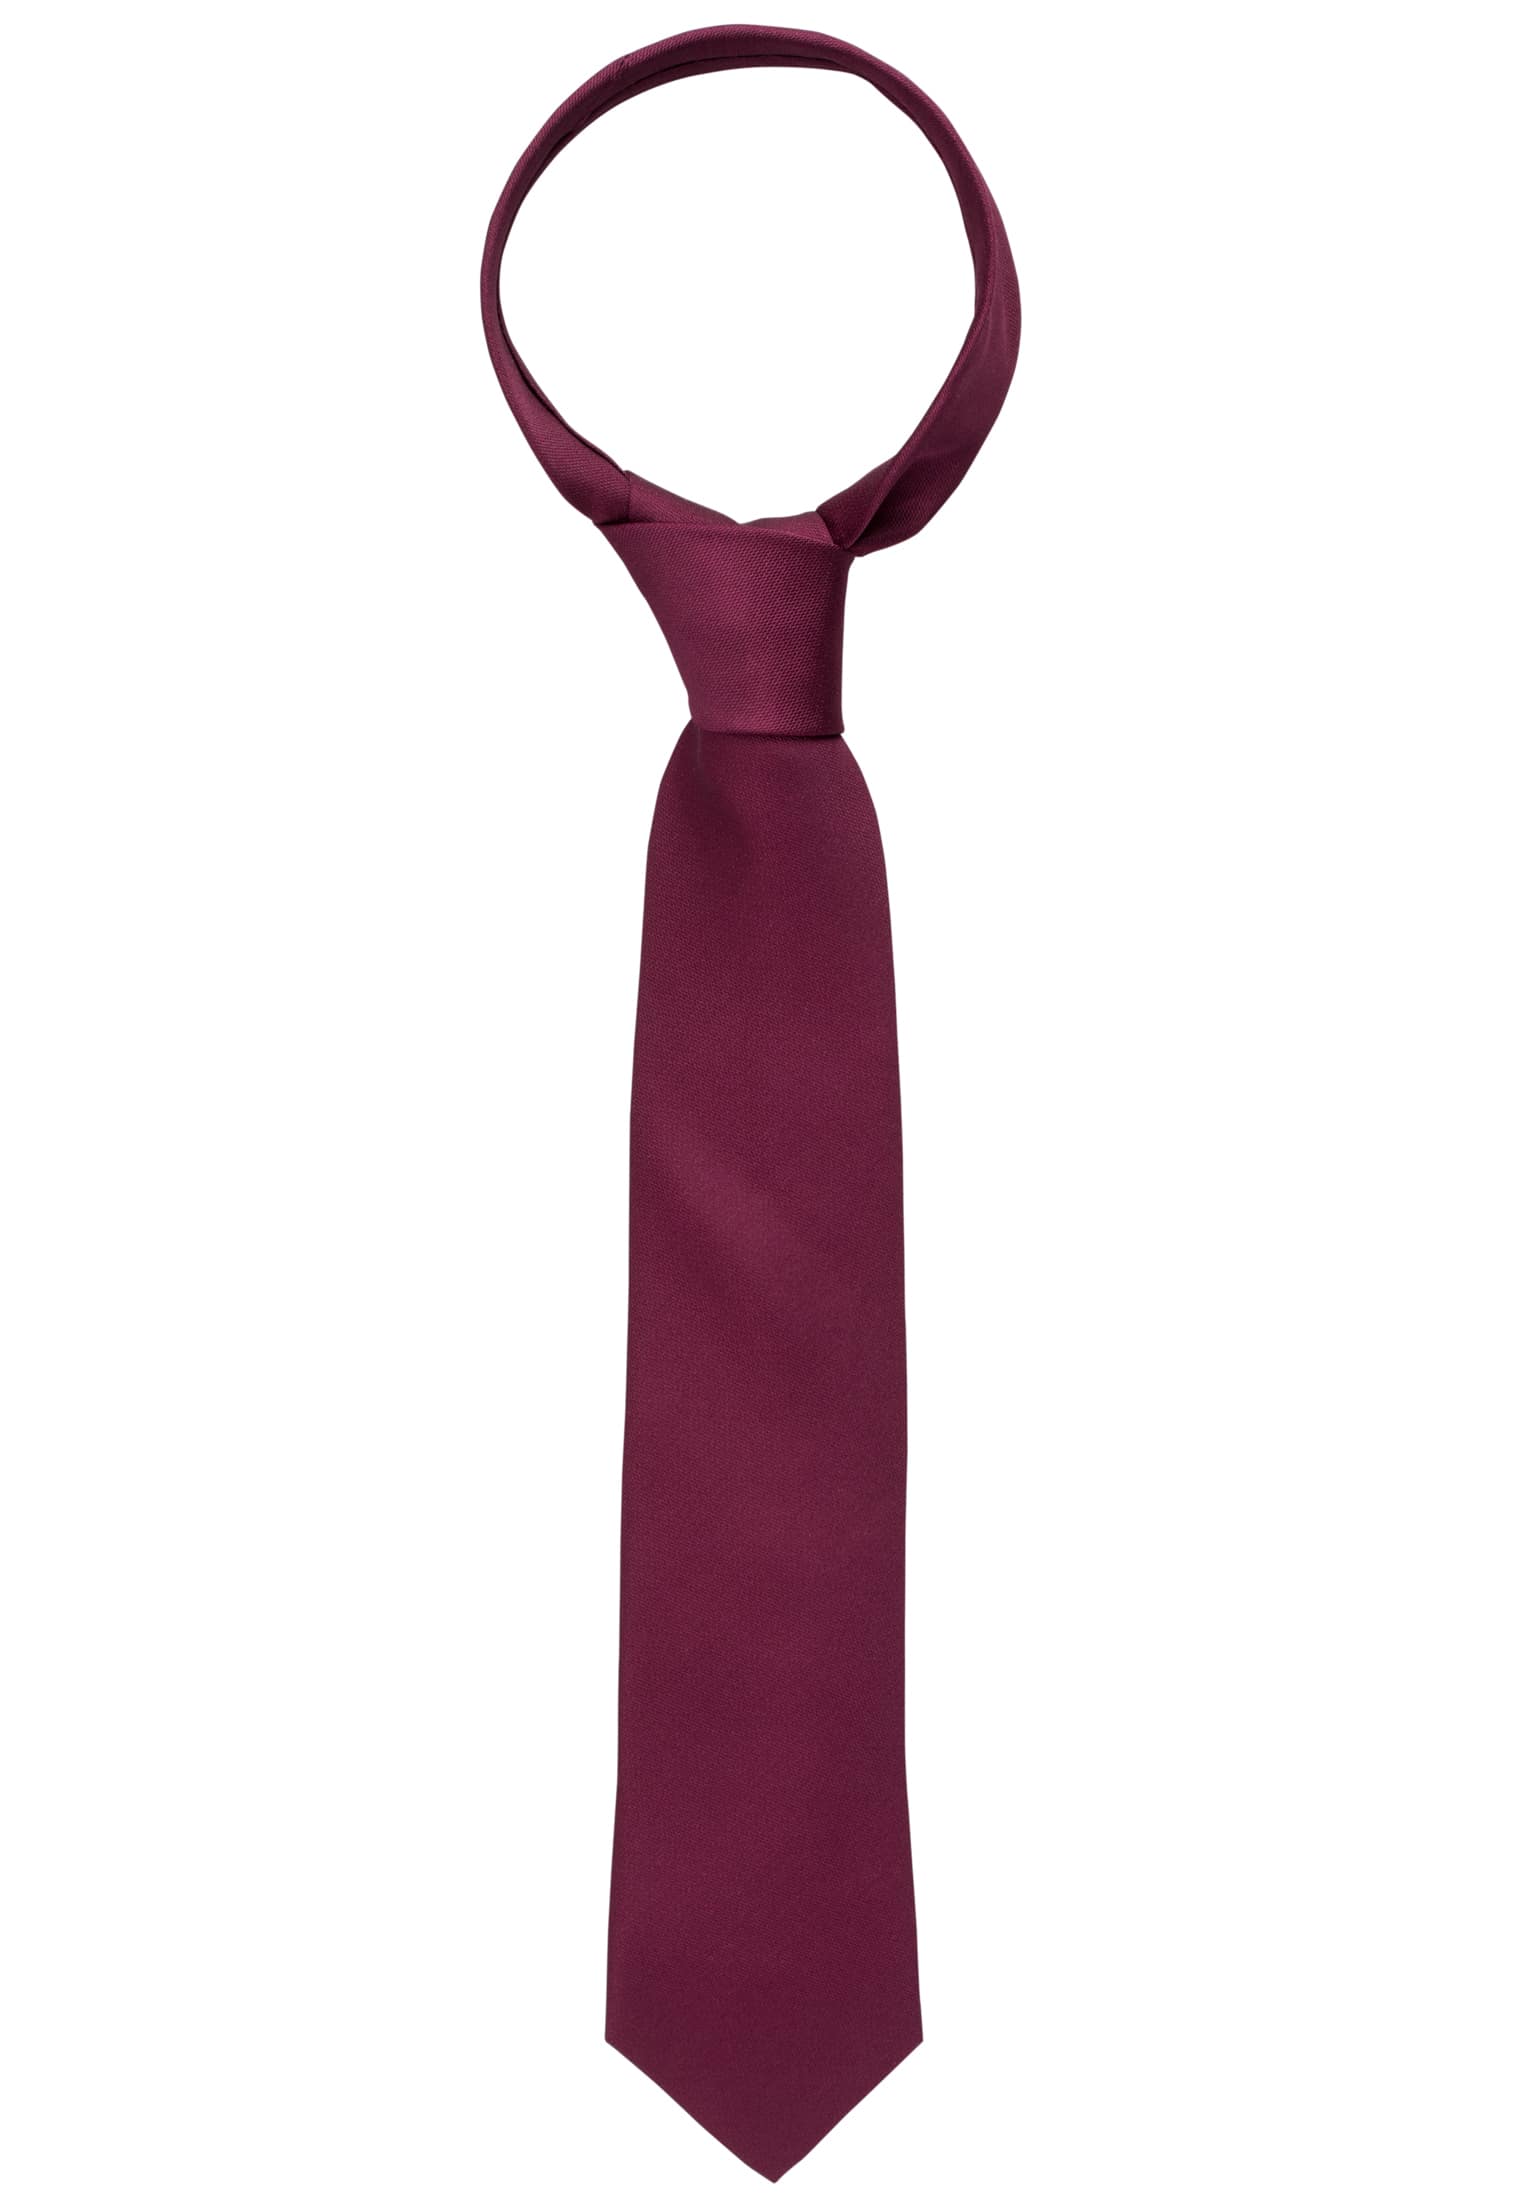 Krawatte in weinrot unifarben | weinrot | 142 | 1AC00020-05-62-142